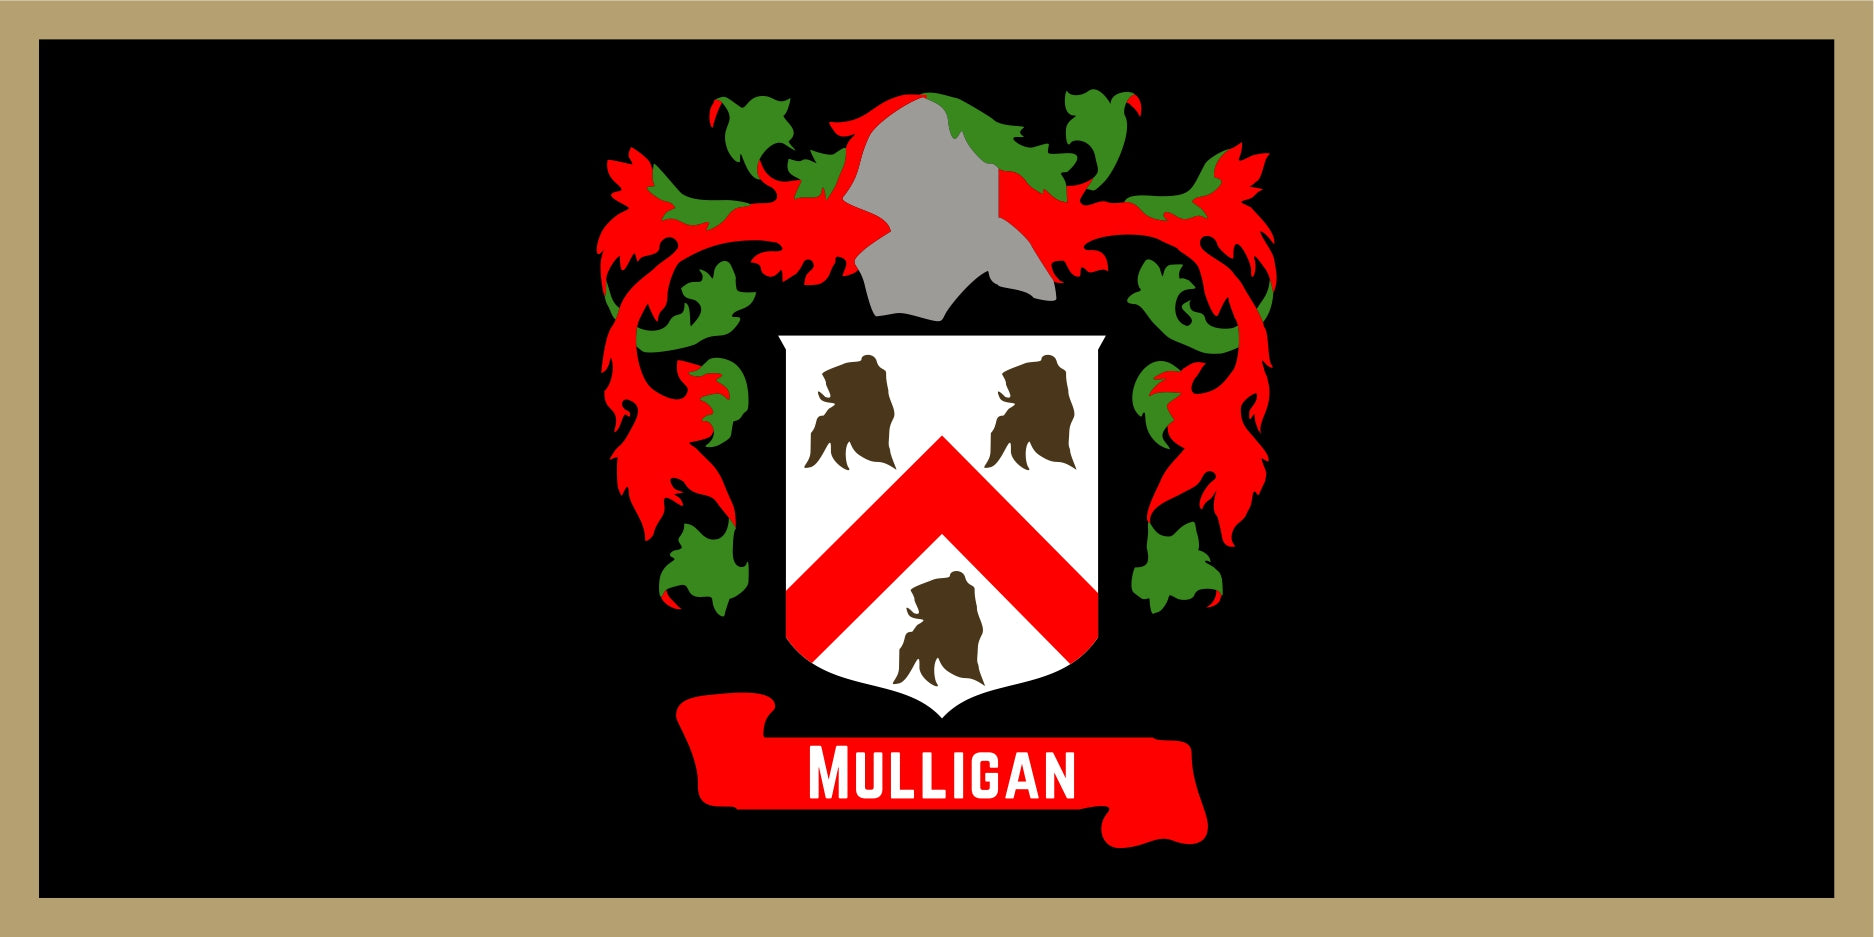 Mulligan §